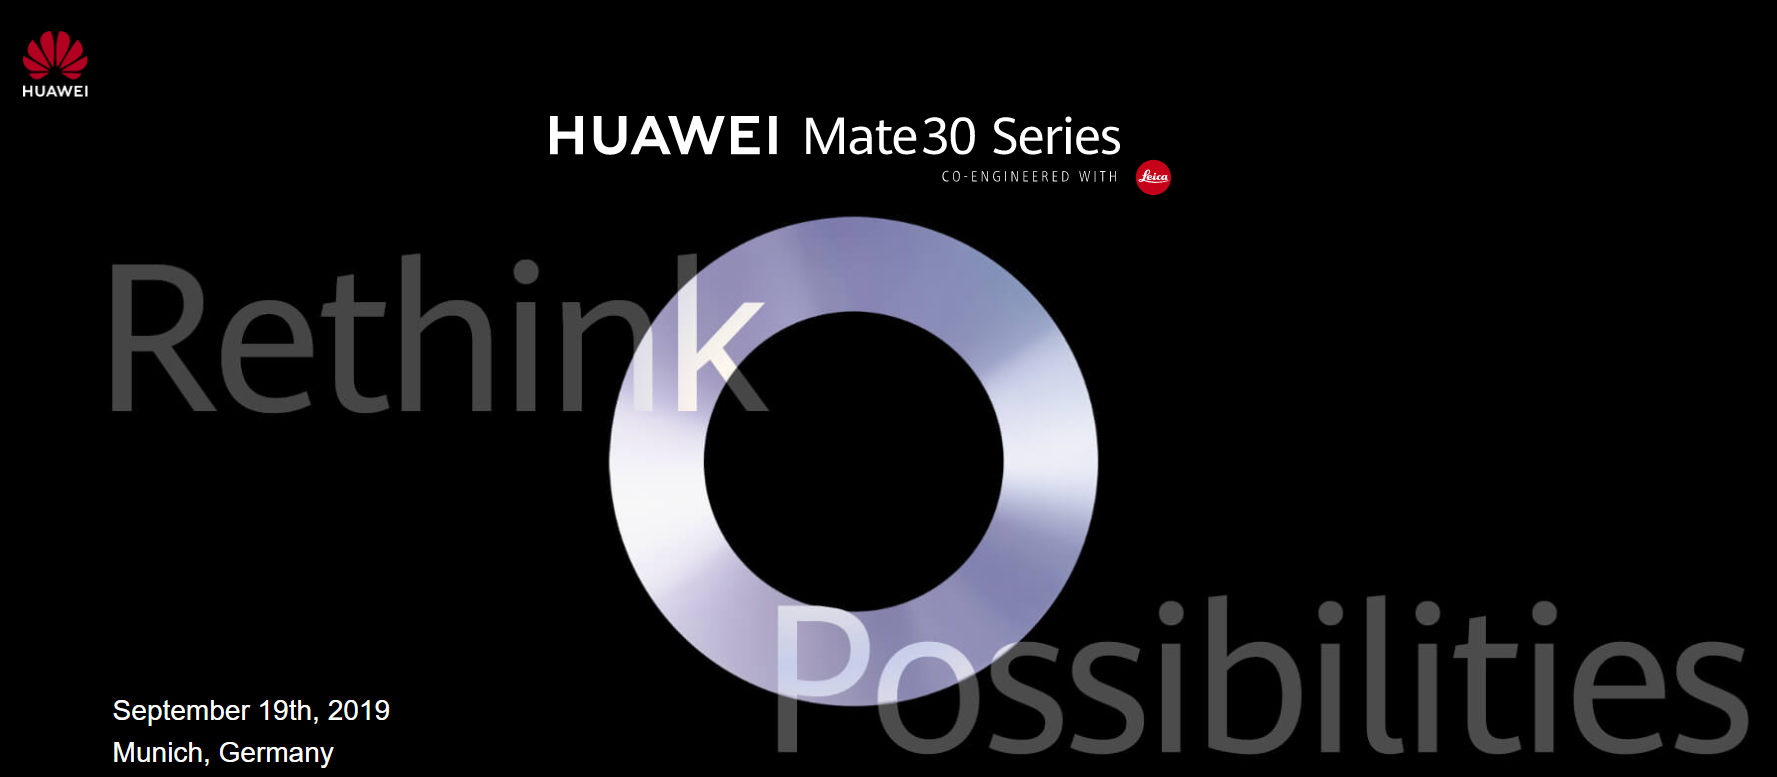 【快訊報報】華為 HUAWEI Mate30 系列新機 將在 9/19 德國慕尼黑發表 - 手機 - 科技狗 3C DOG